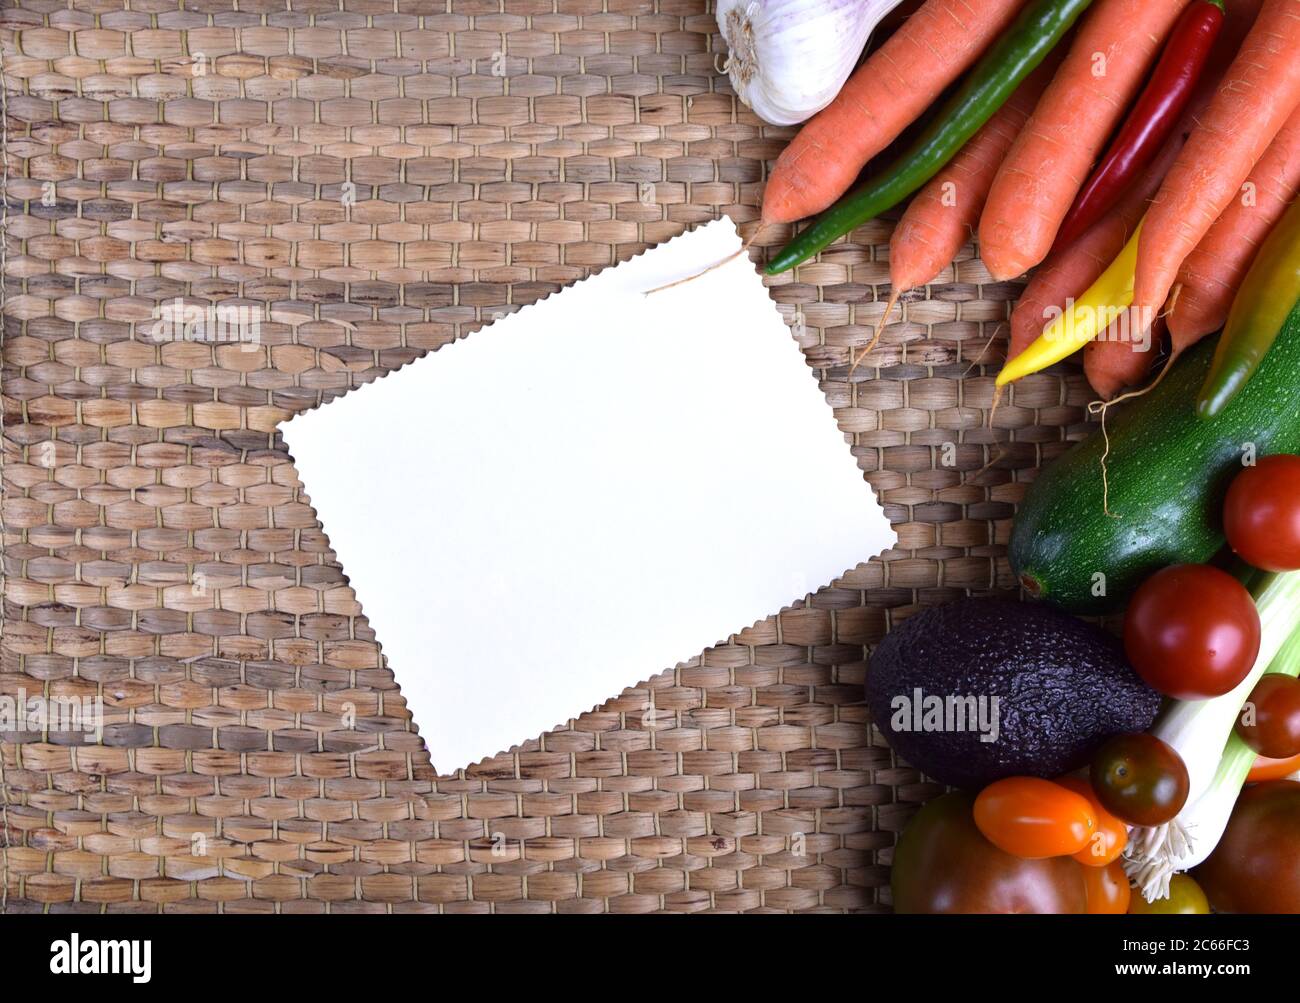 verdure fresche - pronte per cucinare Foto Stock